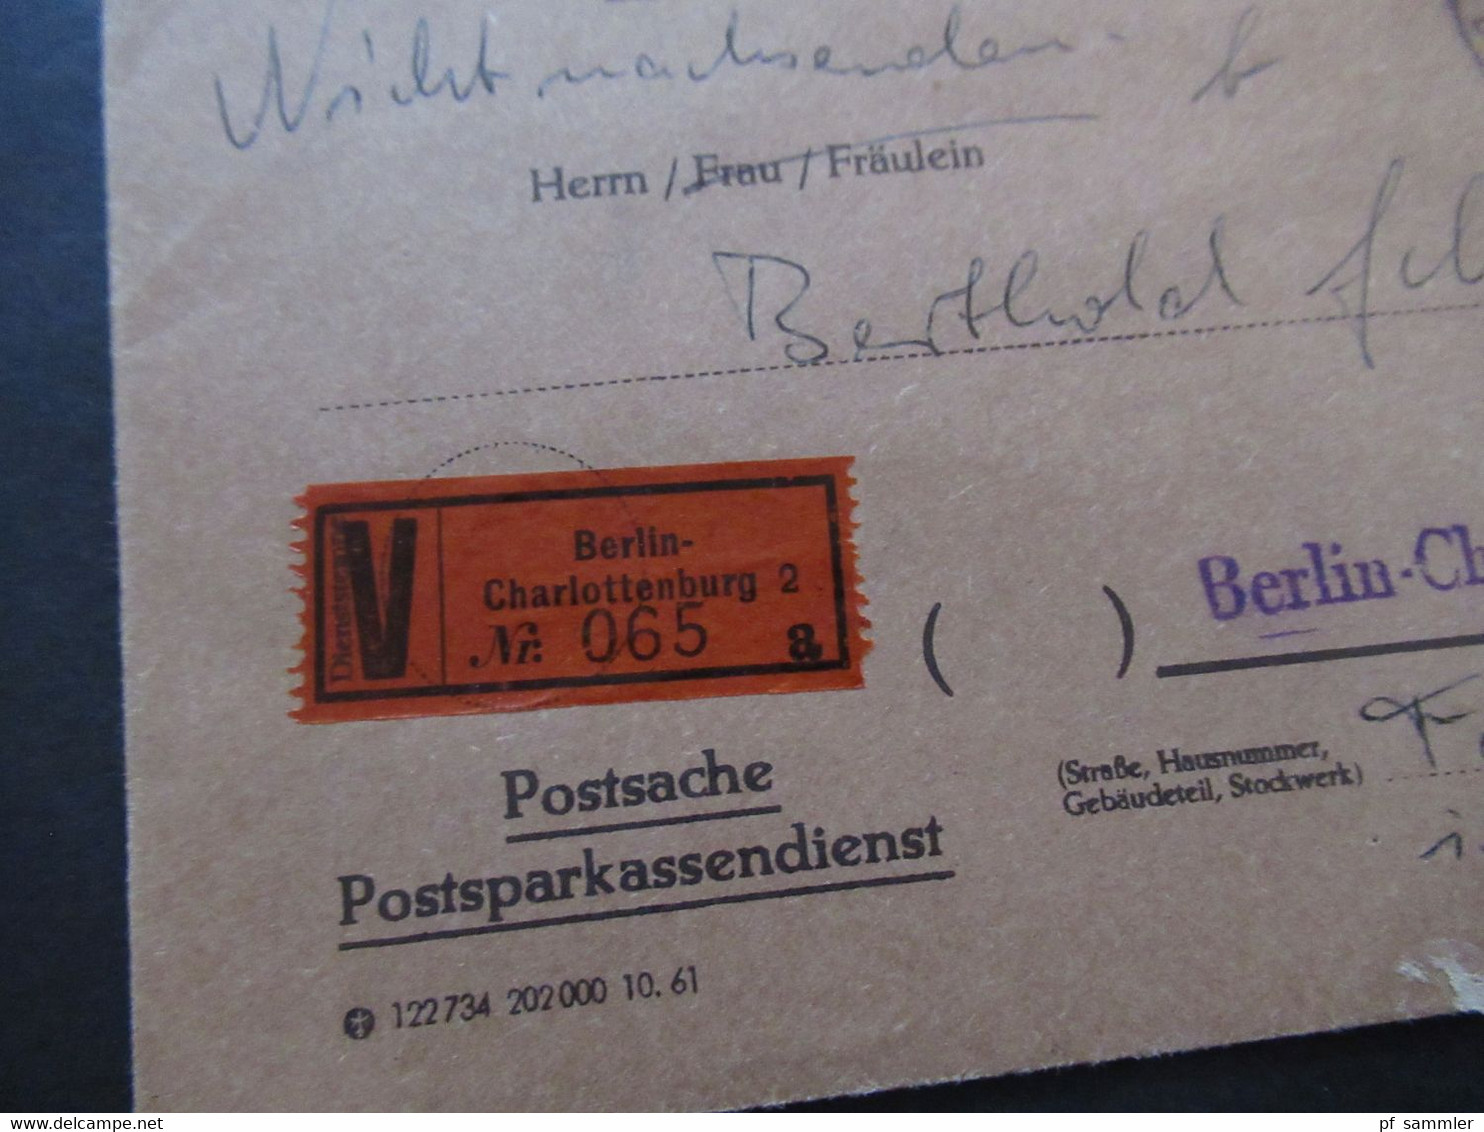 Berlin (West) 1962 Wertbrief V-Zettel Berlin Charlottenburg 2 Postsache Postsparkasendienst Postsparbuch Wert 500 DM - Storia Postale